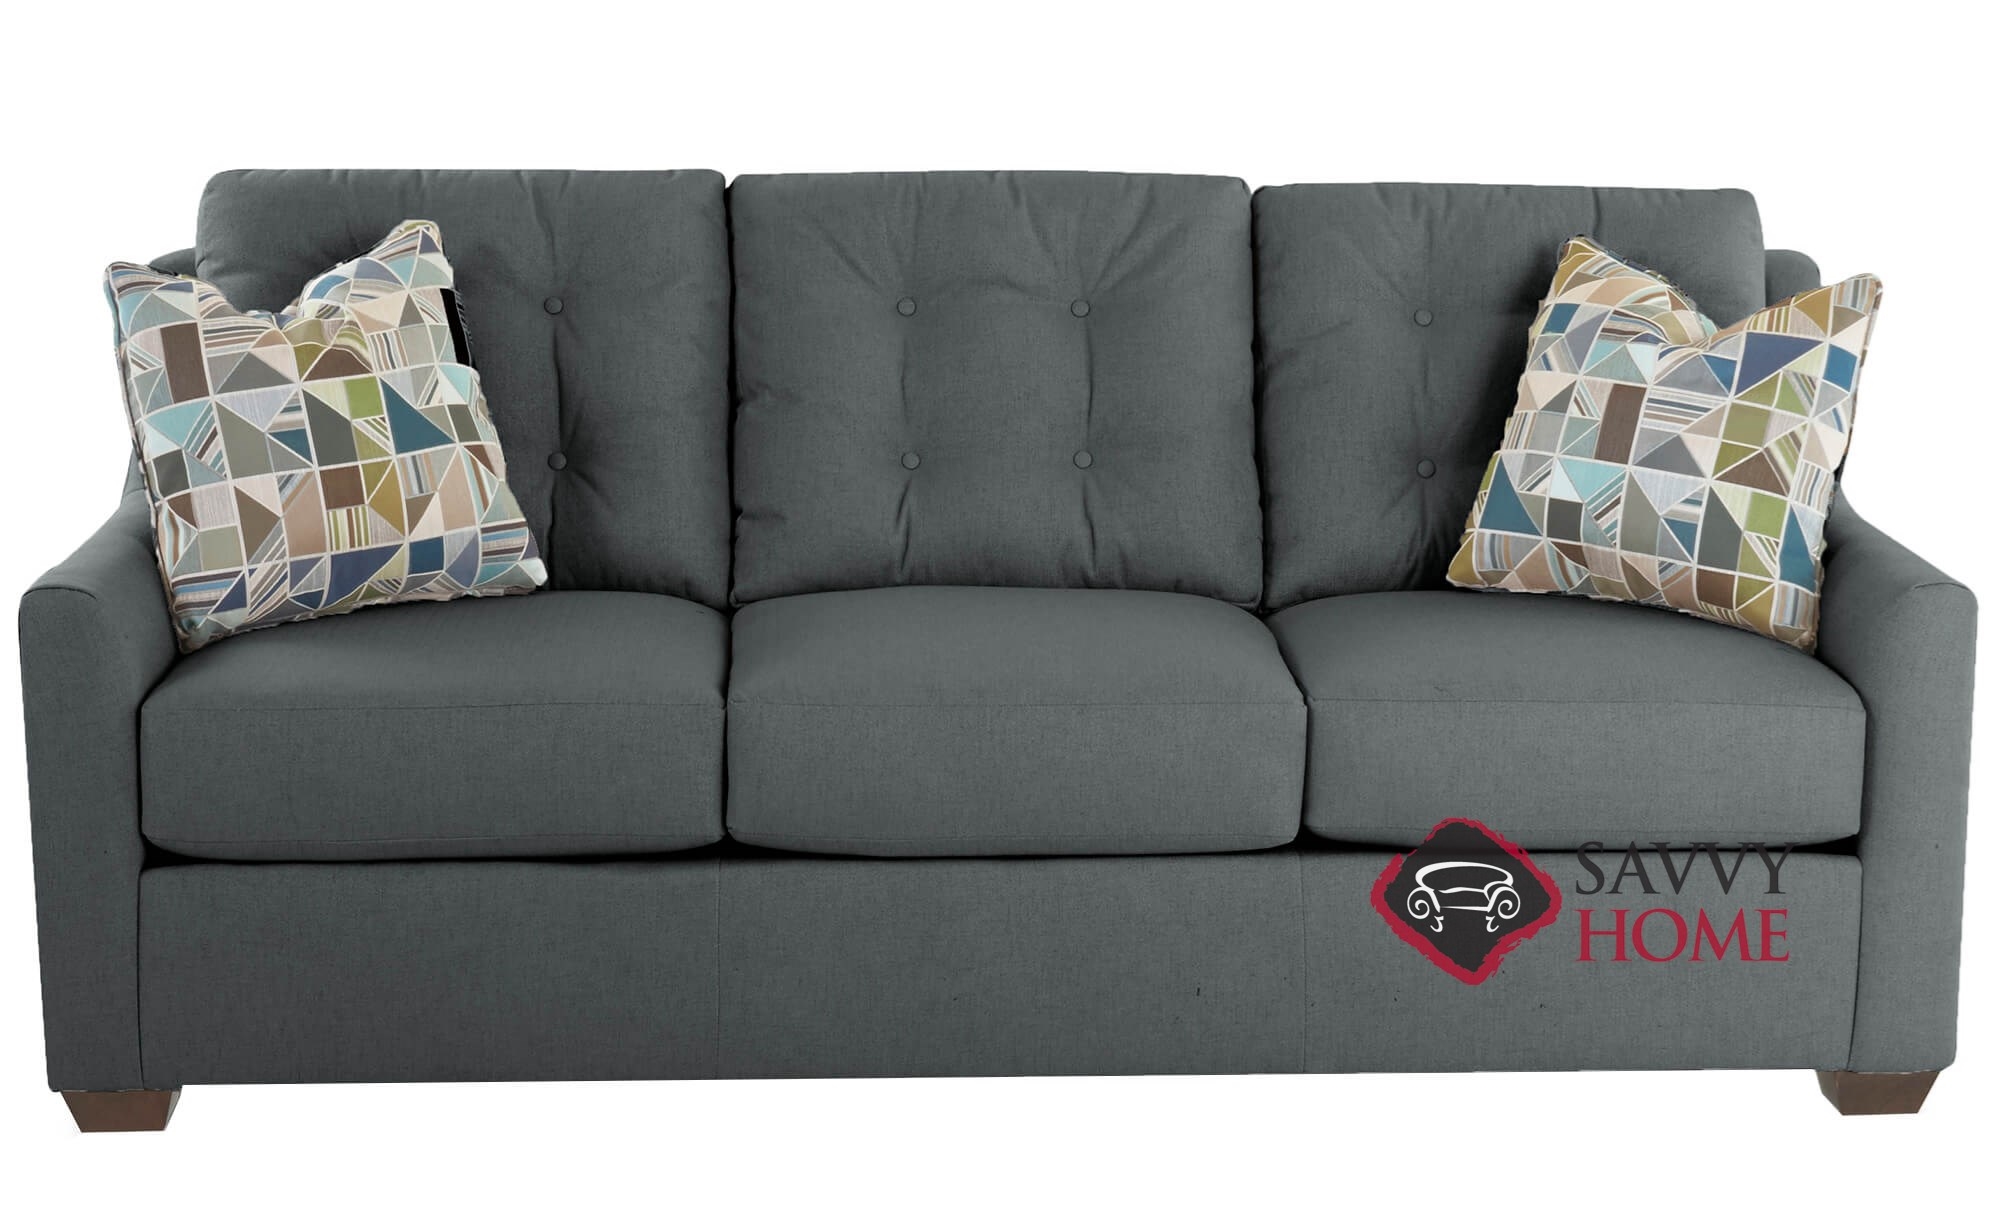 HAYES QUEEN SLEEPER SOFA | Sofa, Seat cushion foam, Grey sofa living room